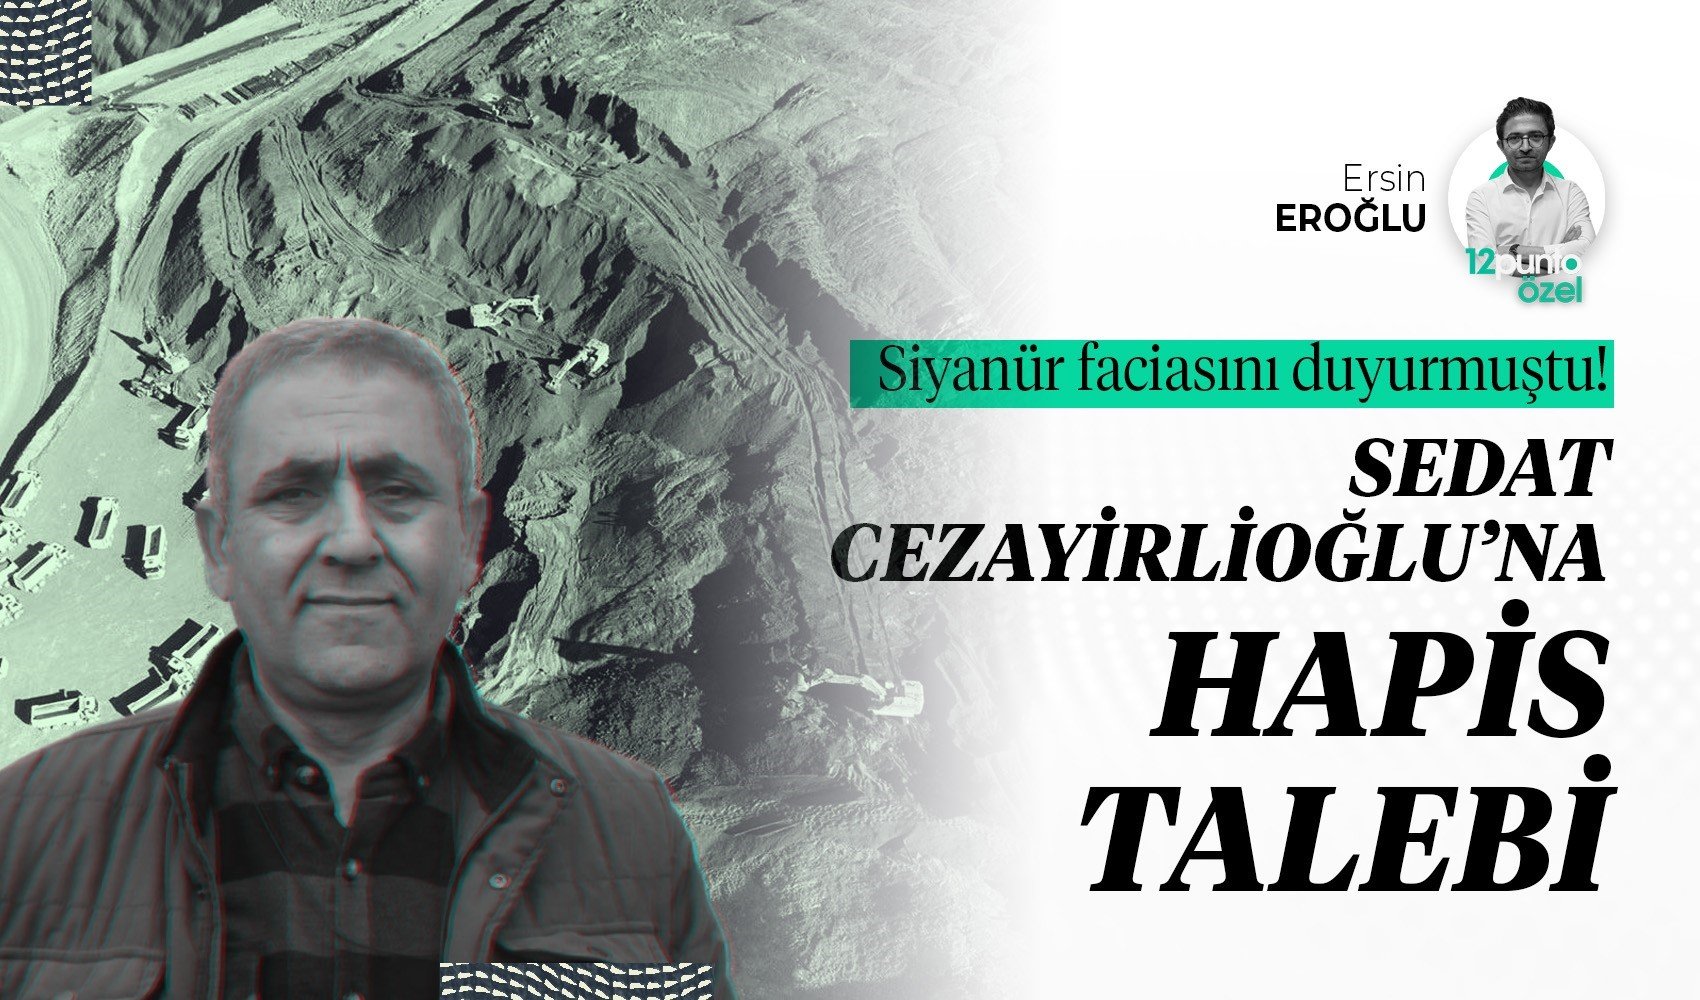 Siyanür faciasını duyurmuştu: Sedat Cezayirlioğlu'na hapis talebi